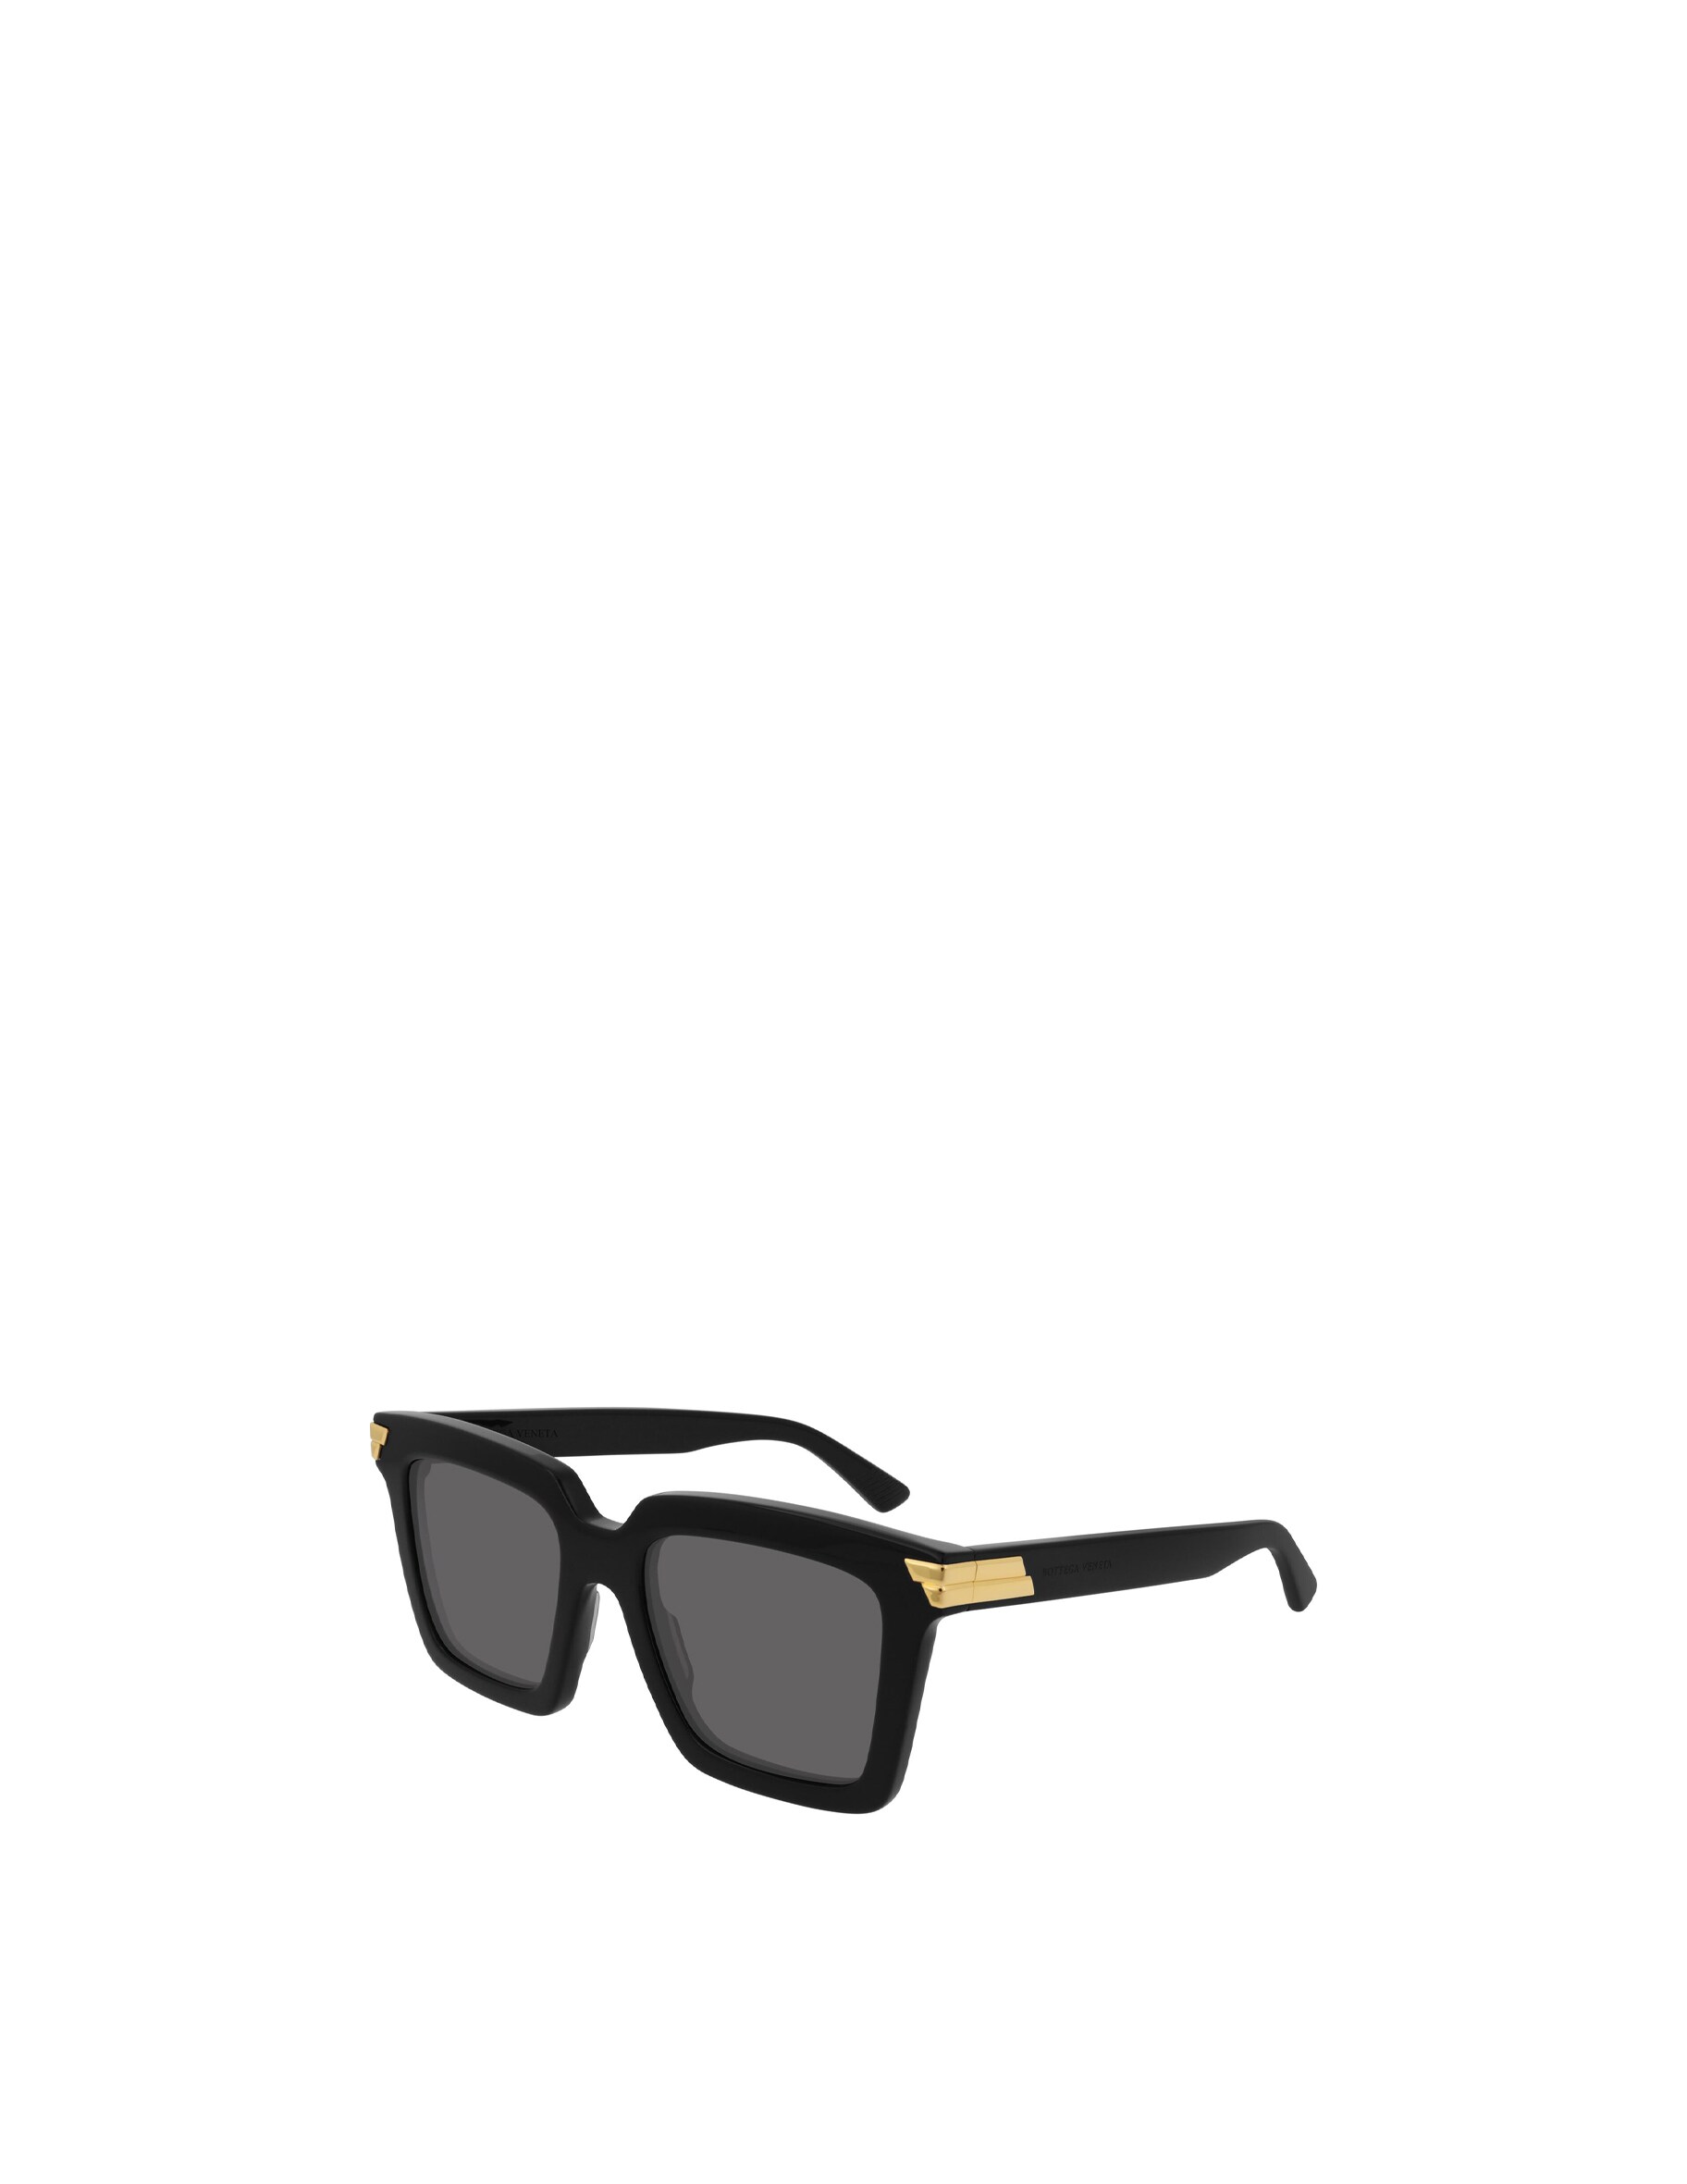 Женственные солнцезащитные очки квадратной формы BV1005S Bottega Veneta, цвет Shiny Black bottega veneta золотистые перекрученные серьги